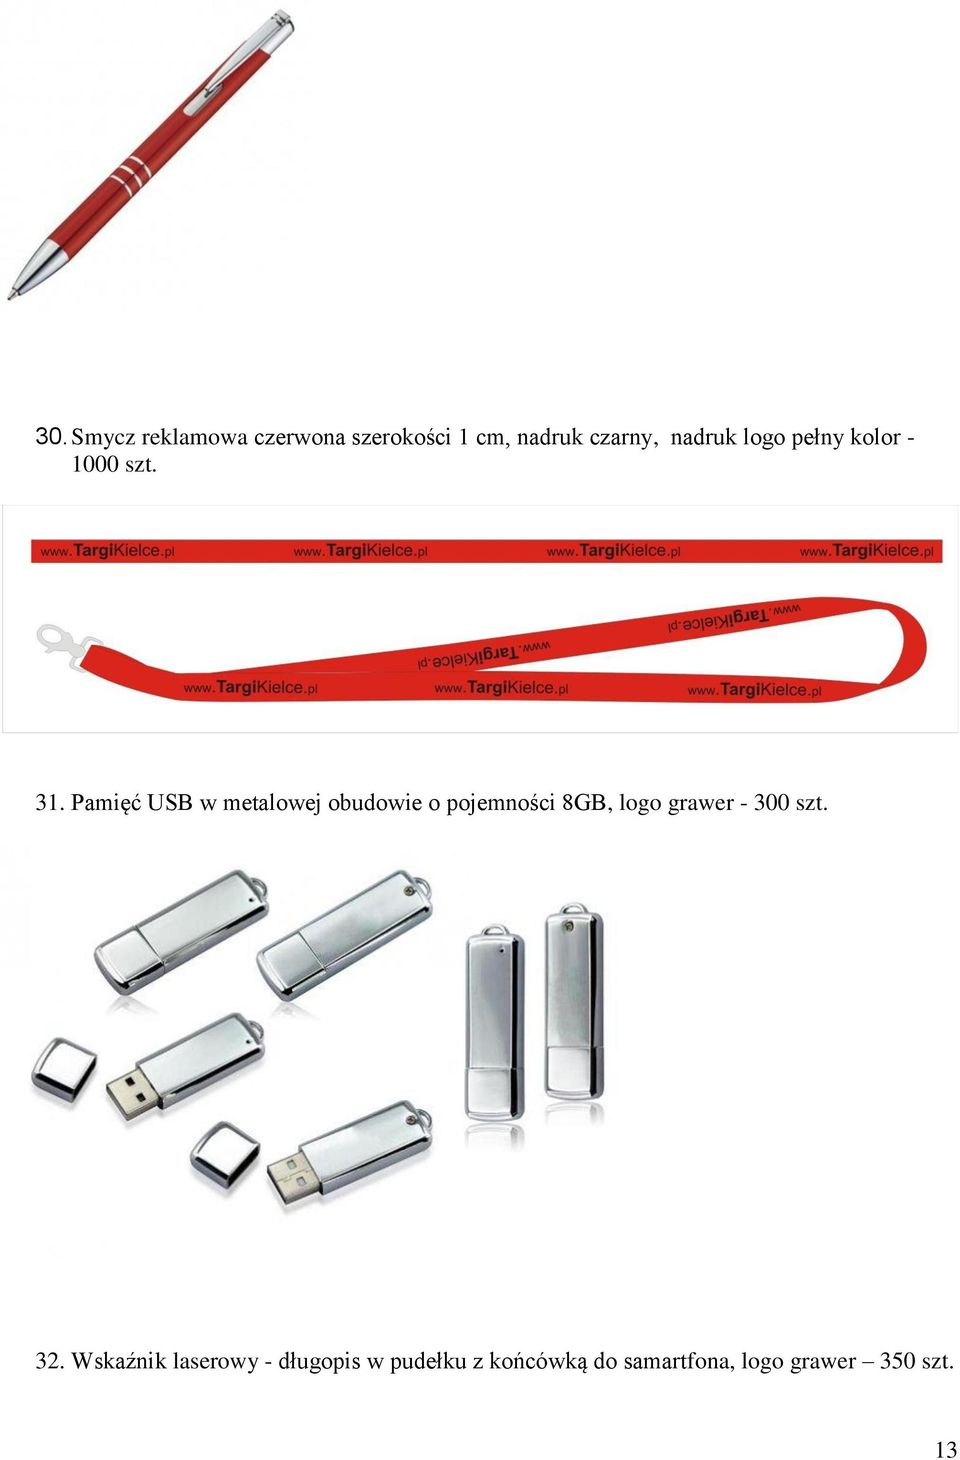 Pamięć USB w metalowej obudowie o pojemności 8GB, logo grawer -